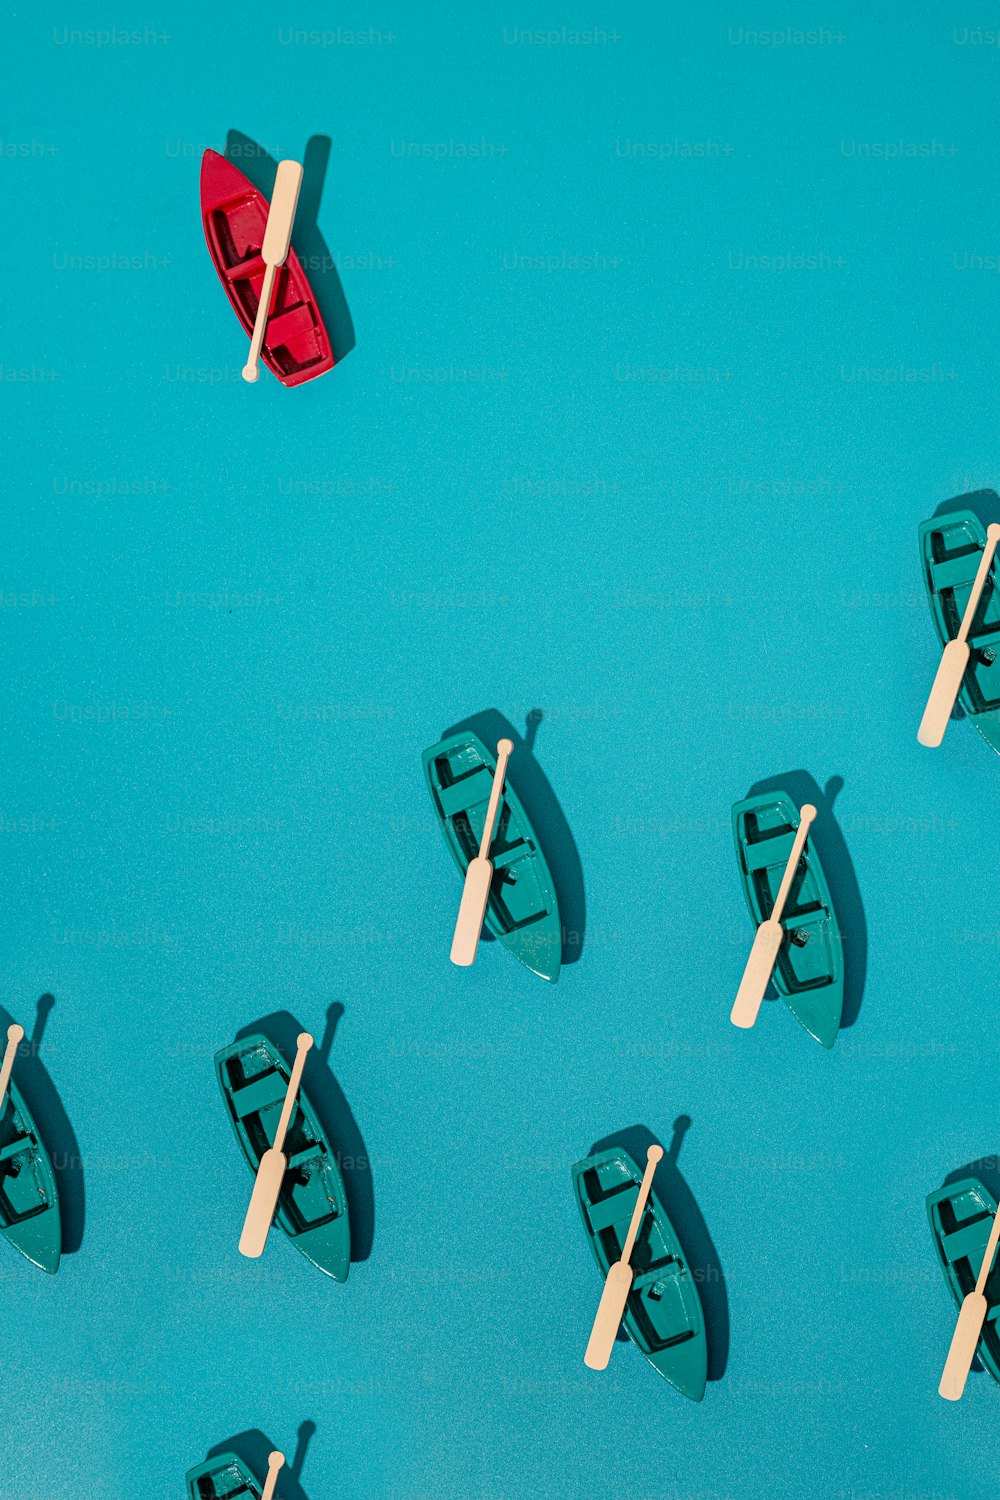 Un gruppo di piccole imbarcazioni galleggianti sulla cima di una superficie blu